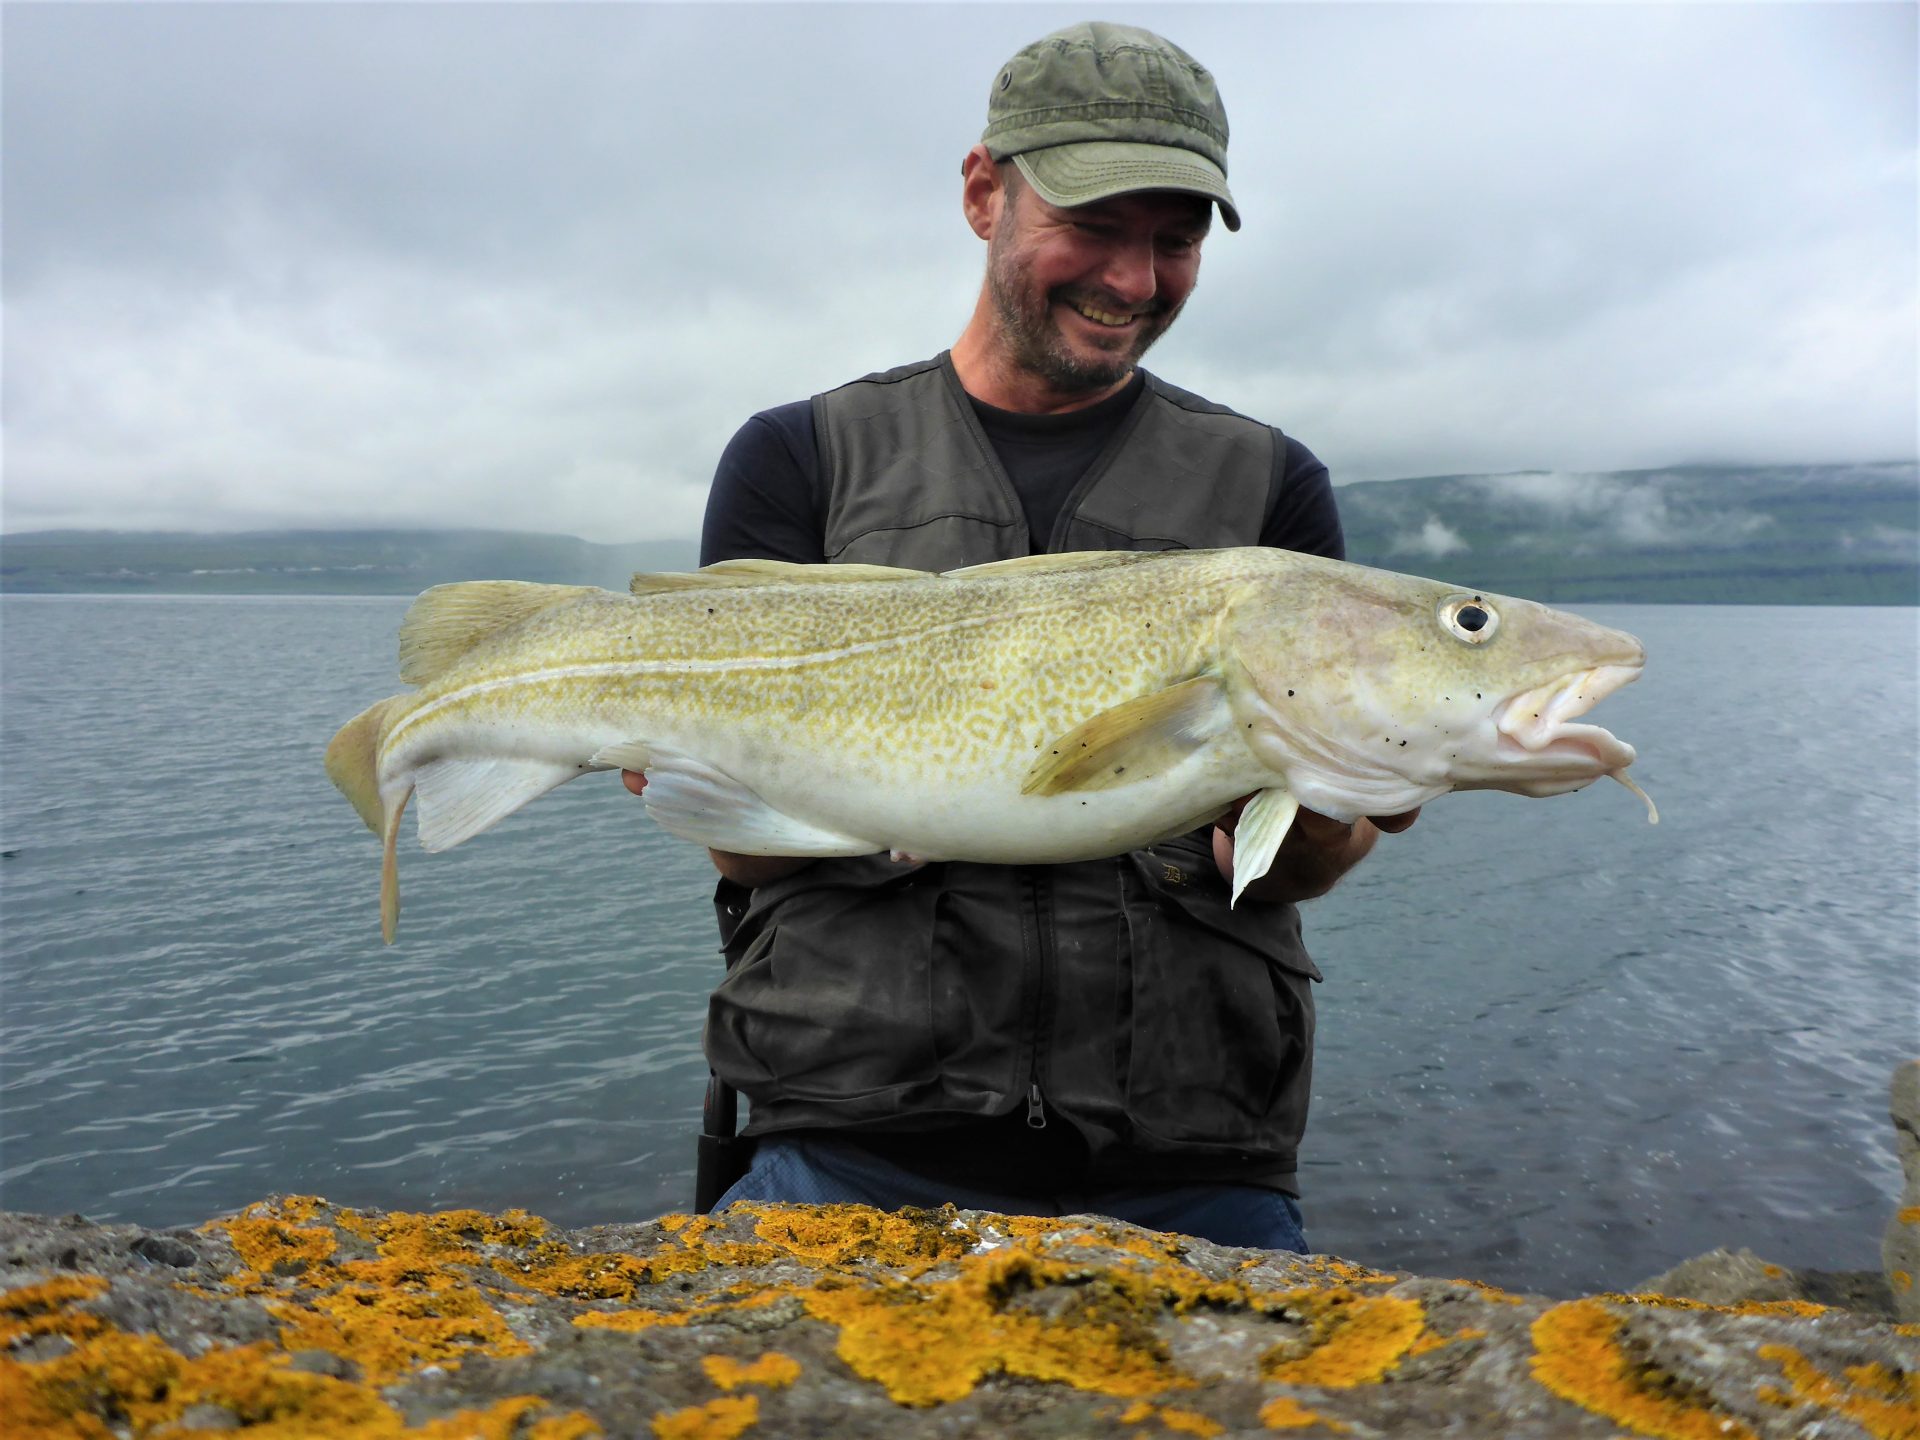 Plads 4 er en fiskeplads i Færøerne med mamge fiskearter.